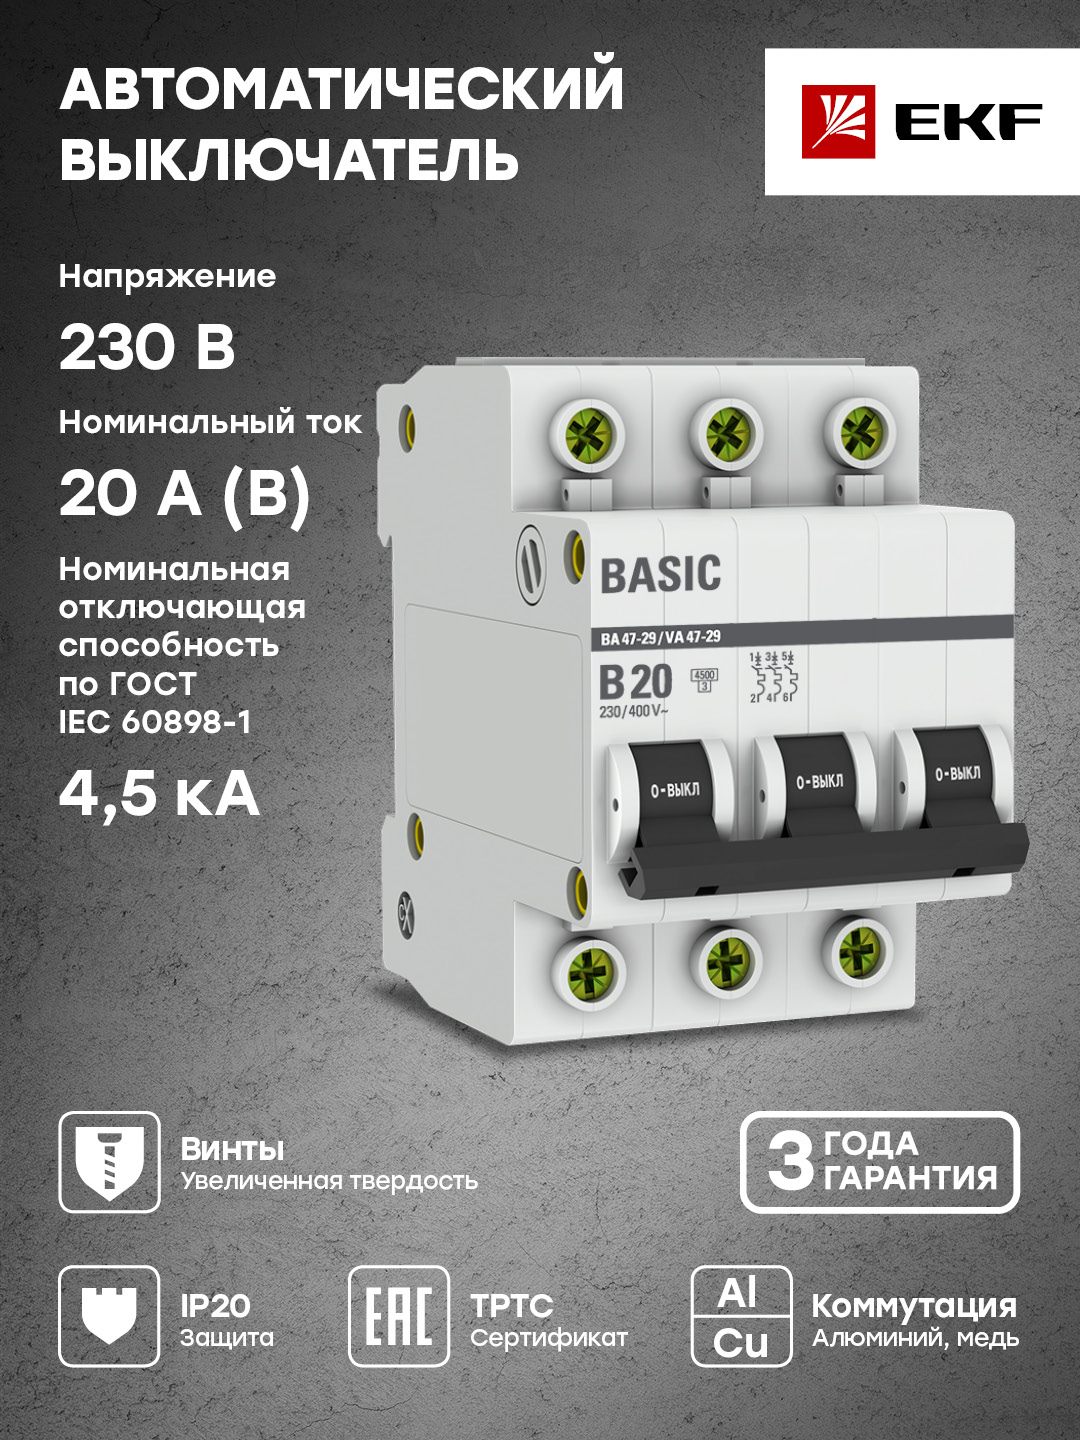 Автоматический выключатель EKF Basic 3P 20А (B) 4,5кА ВА 47-29 mcb4729-3-20-B